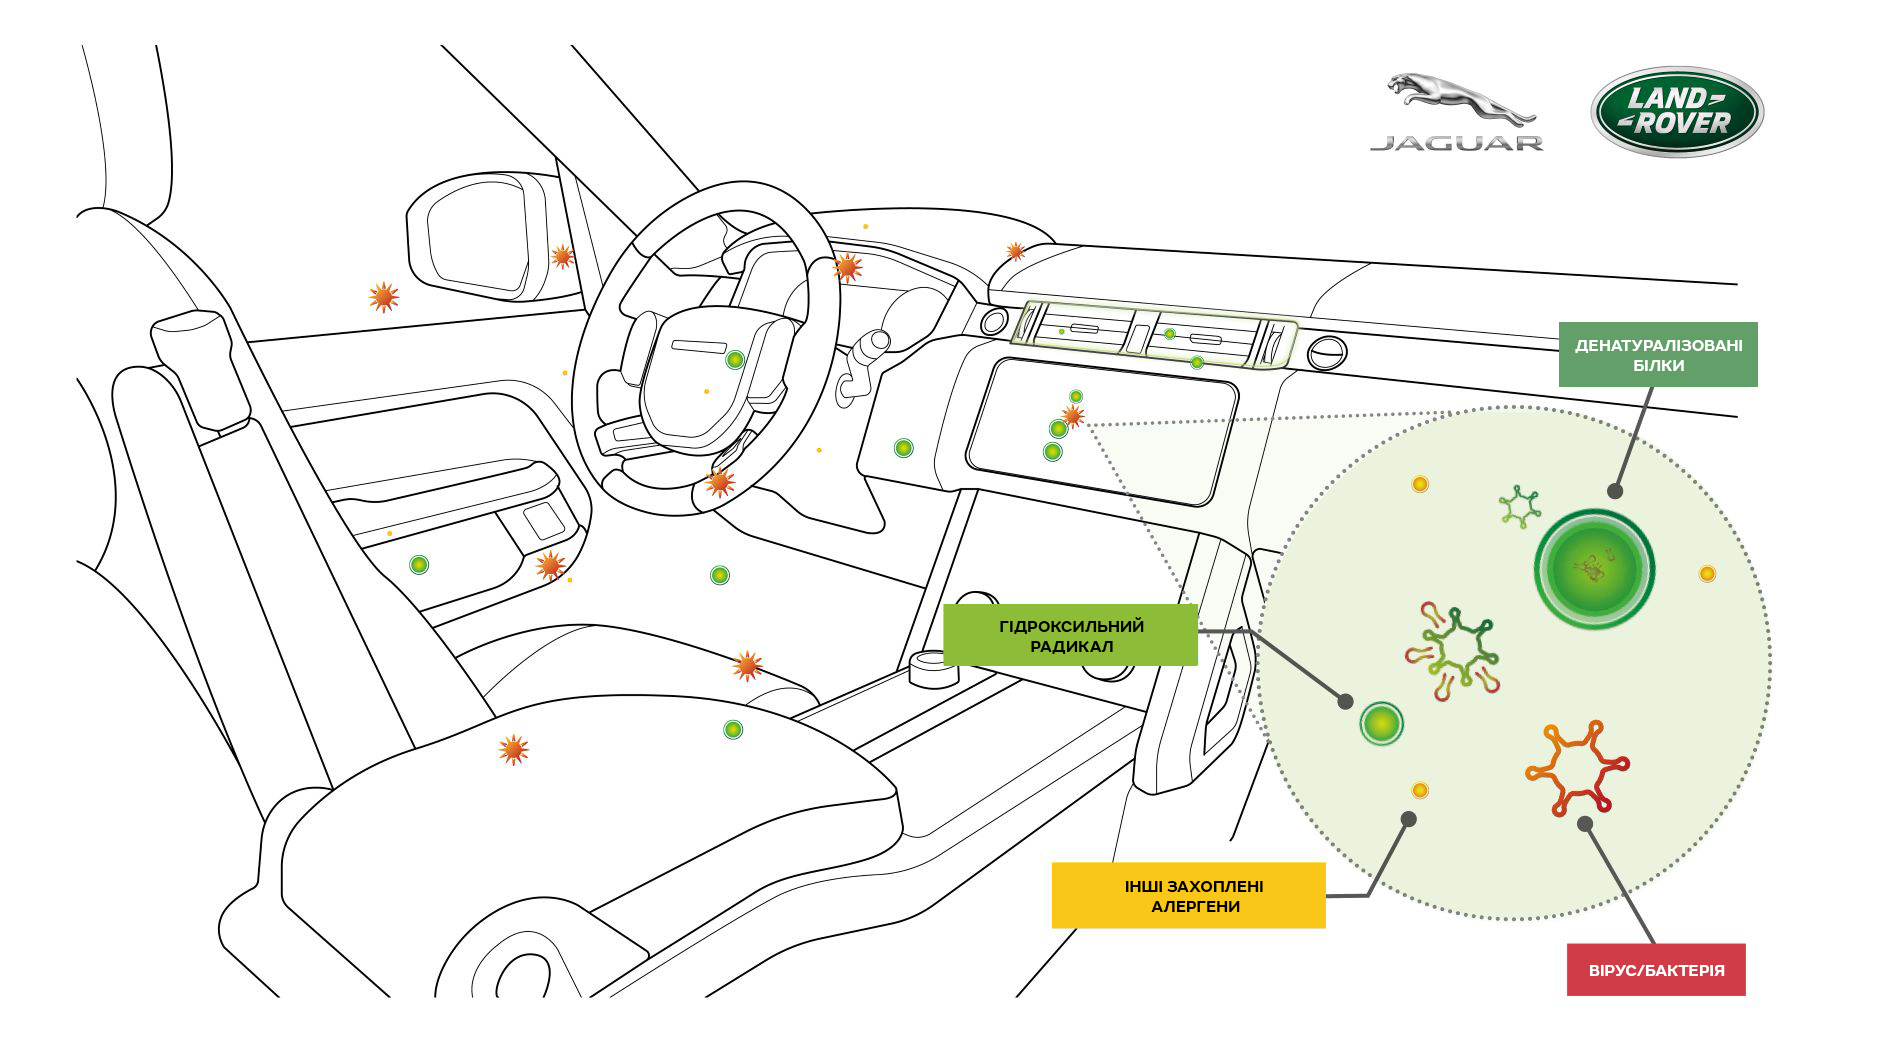 Новая технология очистки воздуха в салоне от Jaguar Land Rover — вирусам тут не место